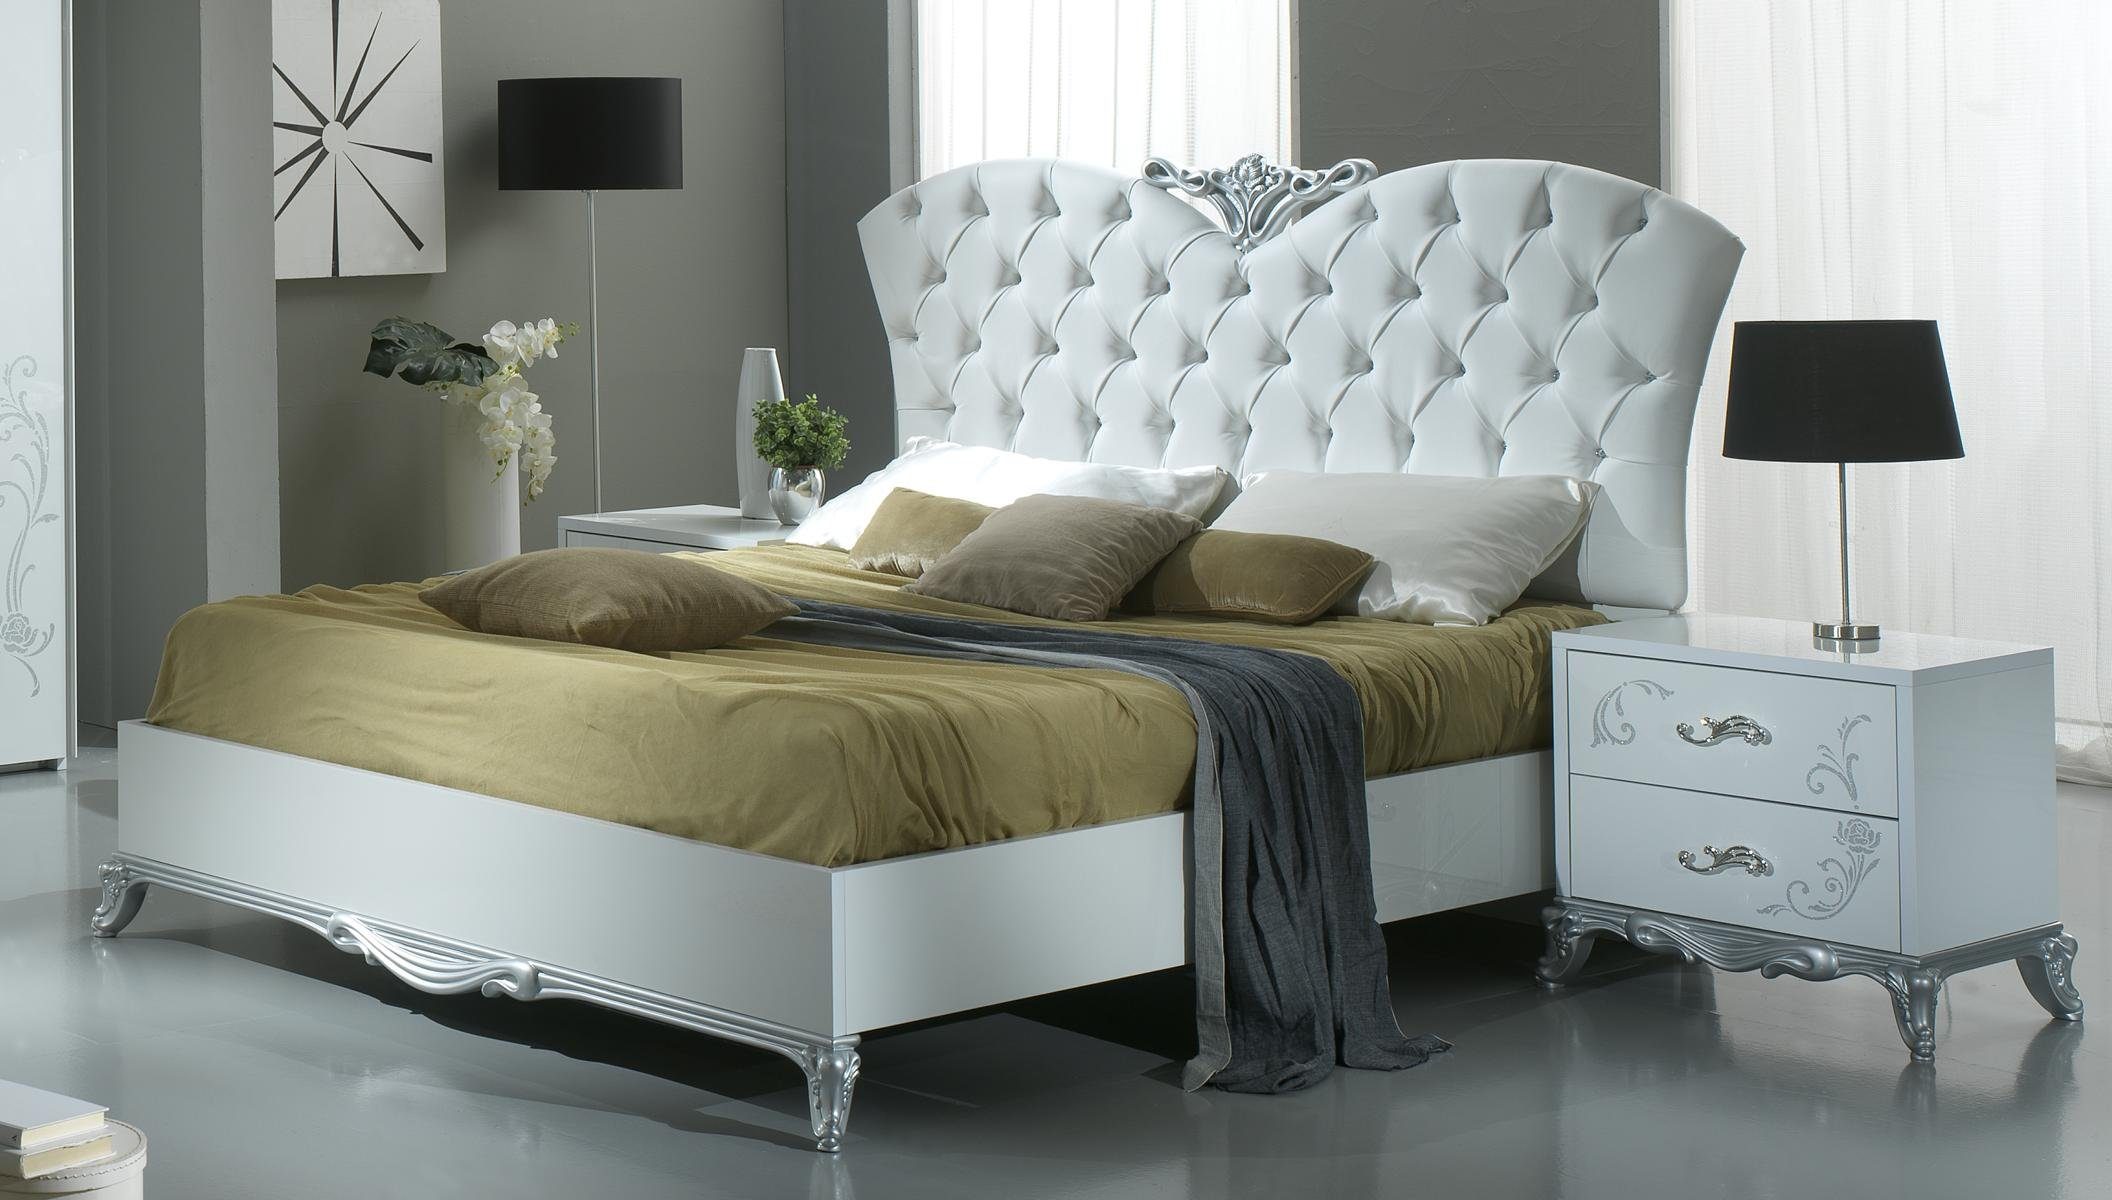 JVmoebel Bett Luxus Italienische Möbel Bett Leder Betten 160x200